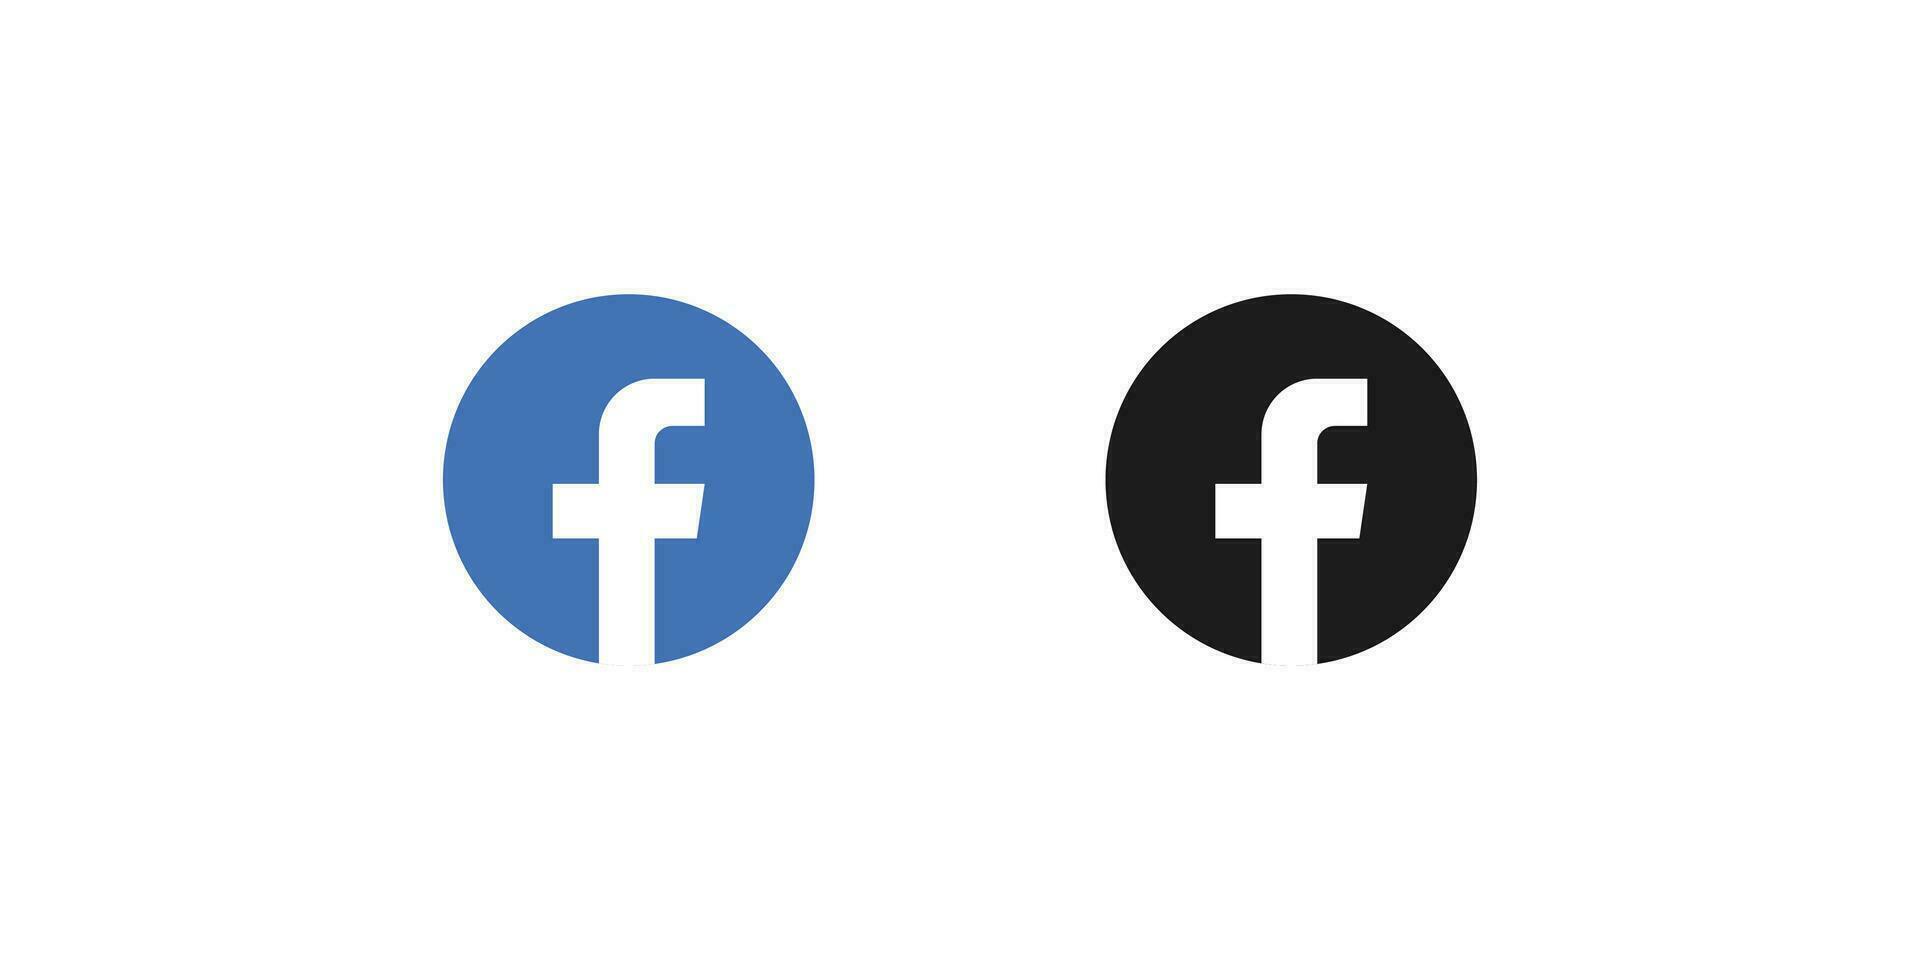 Facebook social medios de comunicación logo icono vector